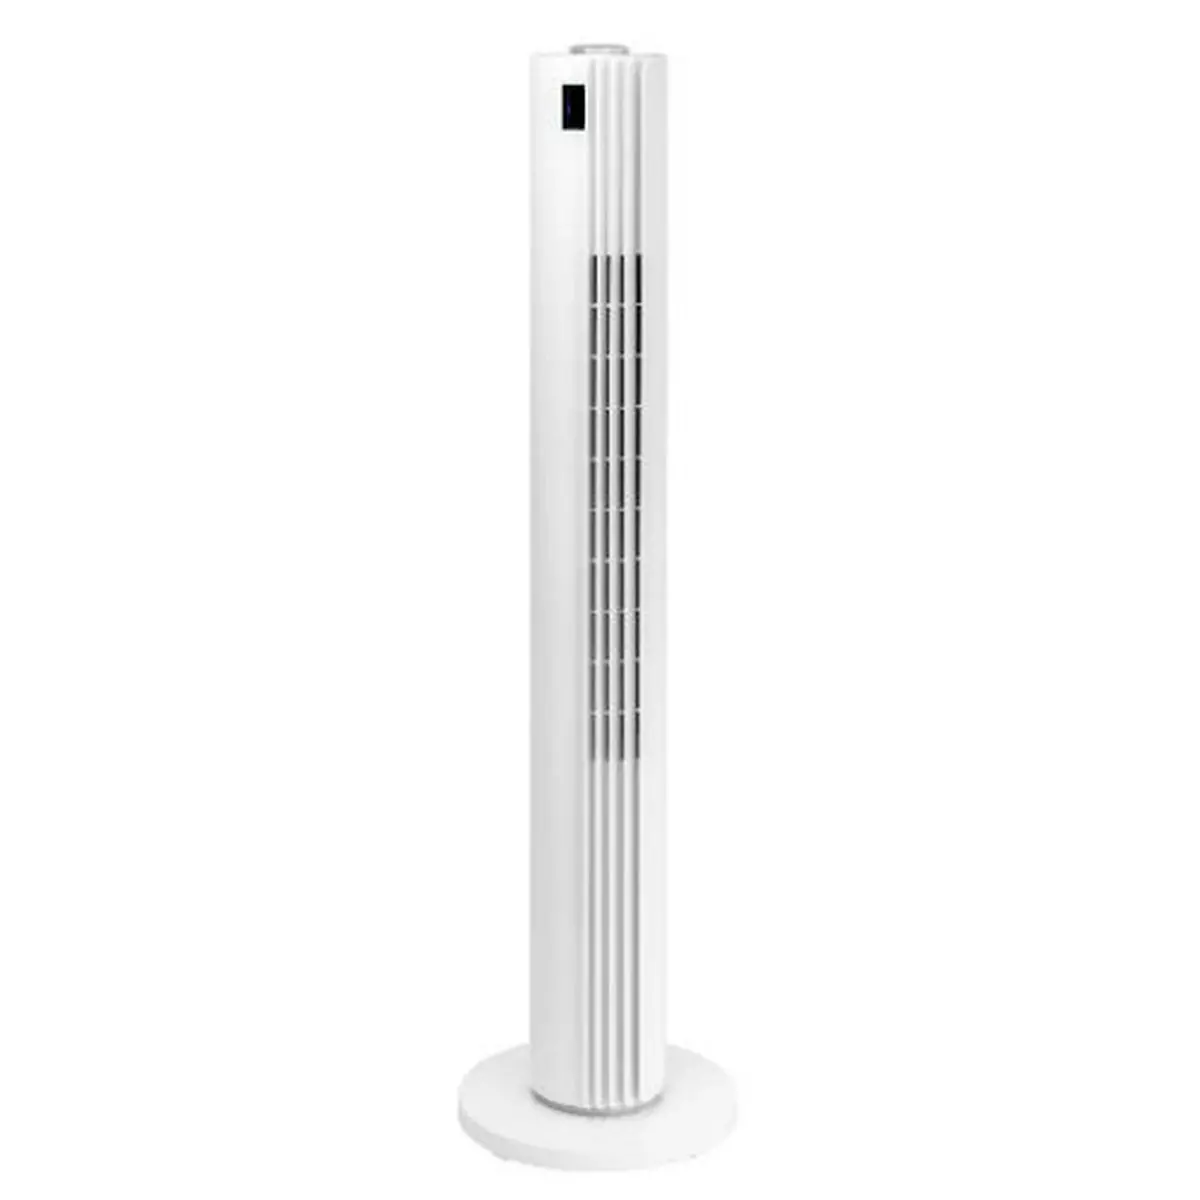 ROWENTA Ventilateur colonne VU6720 - Blanc